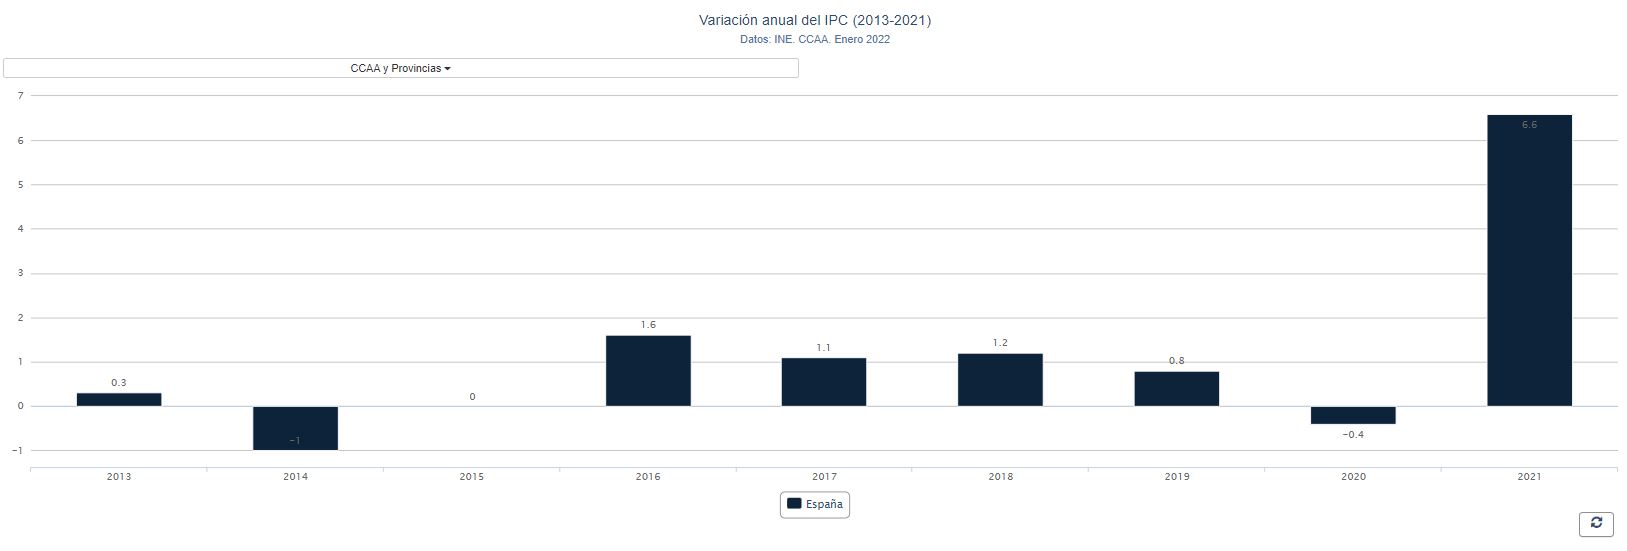 Evolución del IPC anual en España